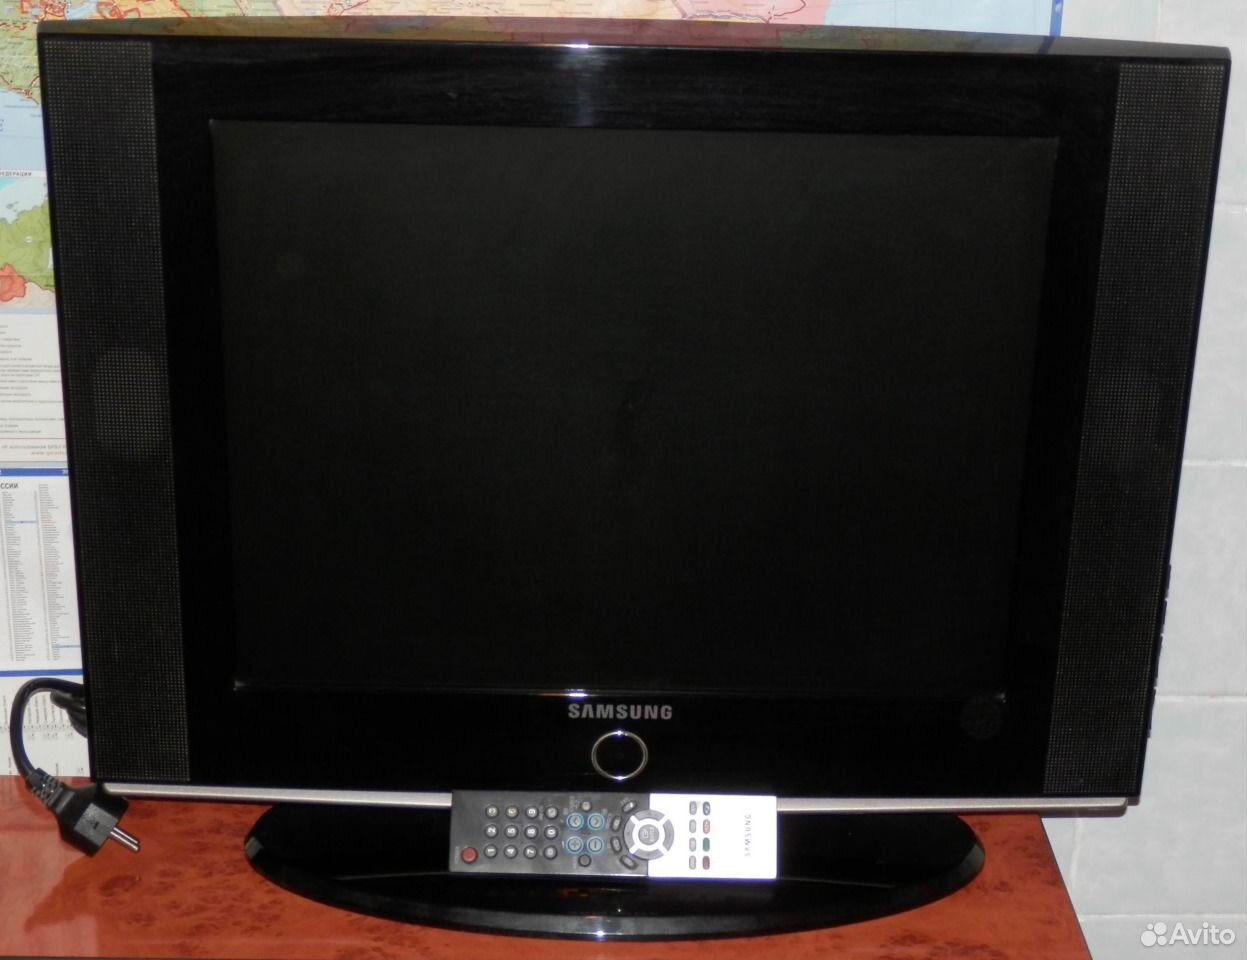 Телевизор Samsung 20 s 81b. Телевизор Samsung le-20s81b 20". ТВ самсунг 15 дюймов. Samsung 81 см.